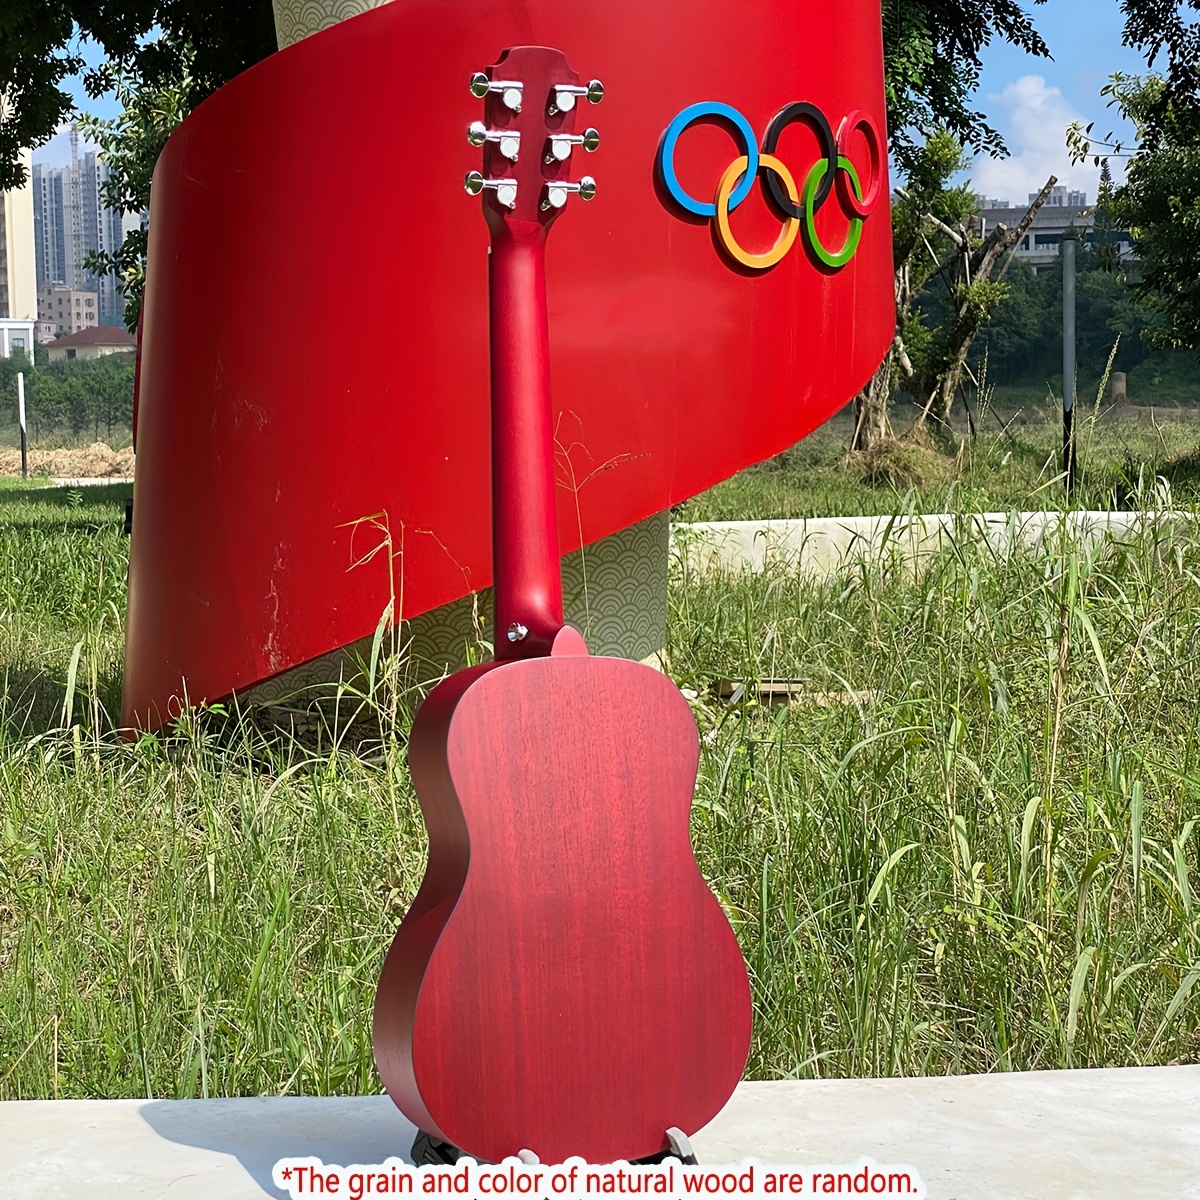 Guitare acoustique rouge